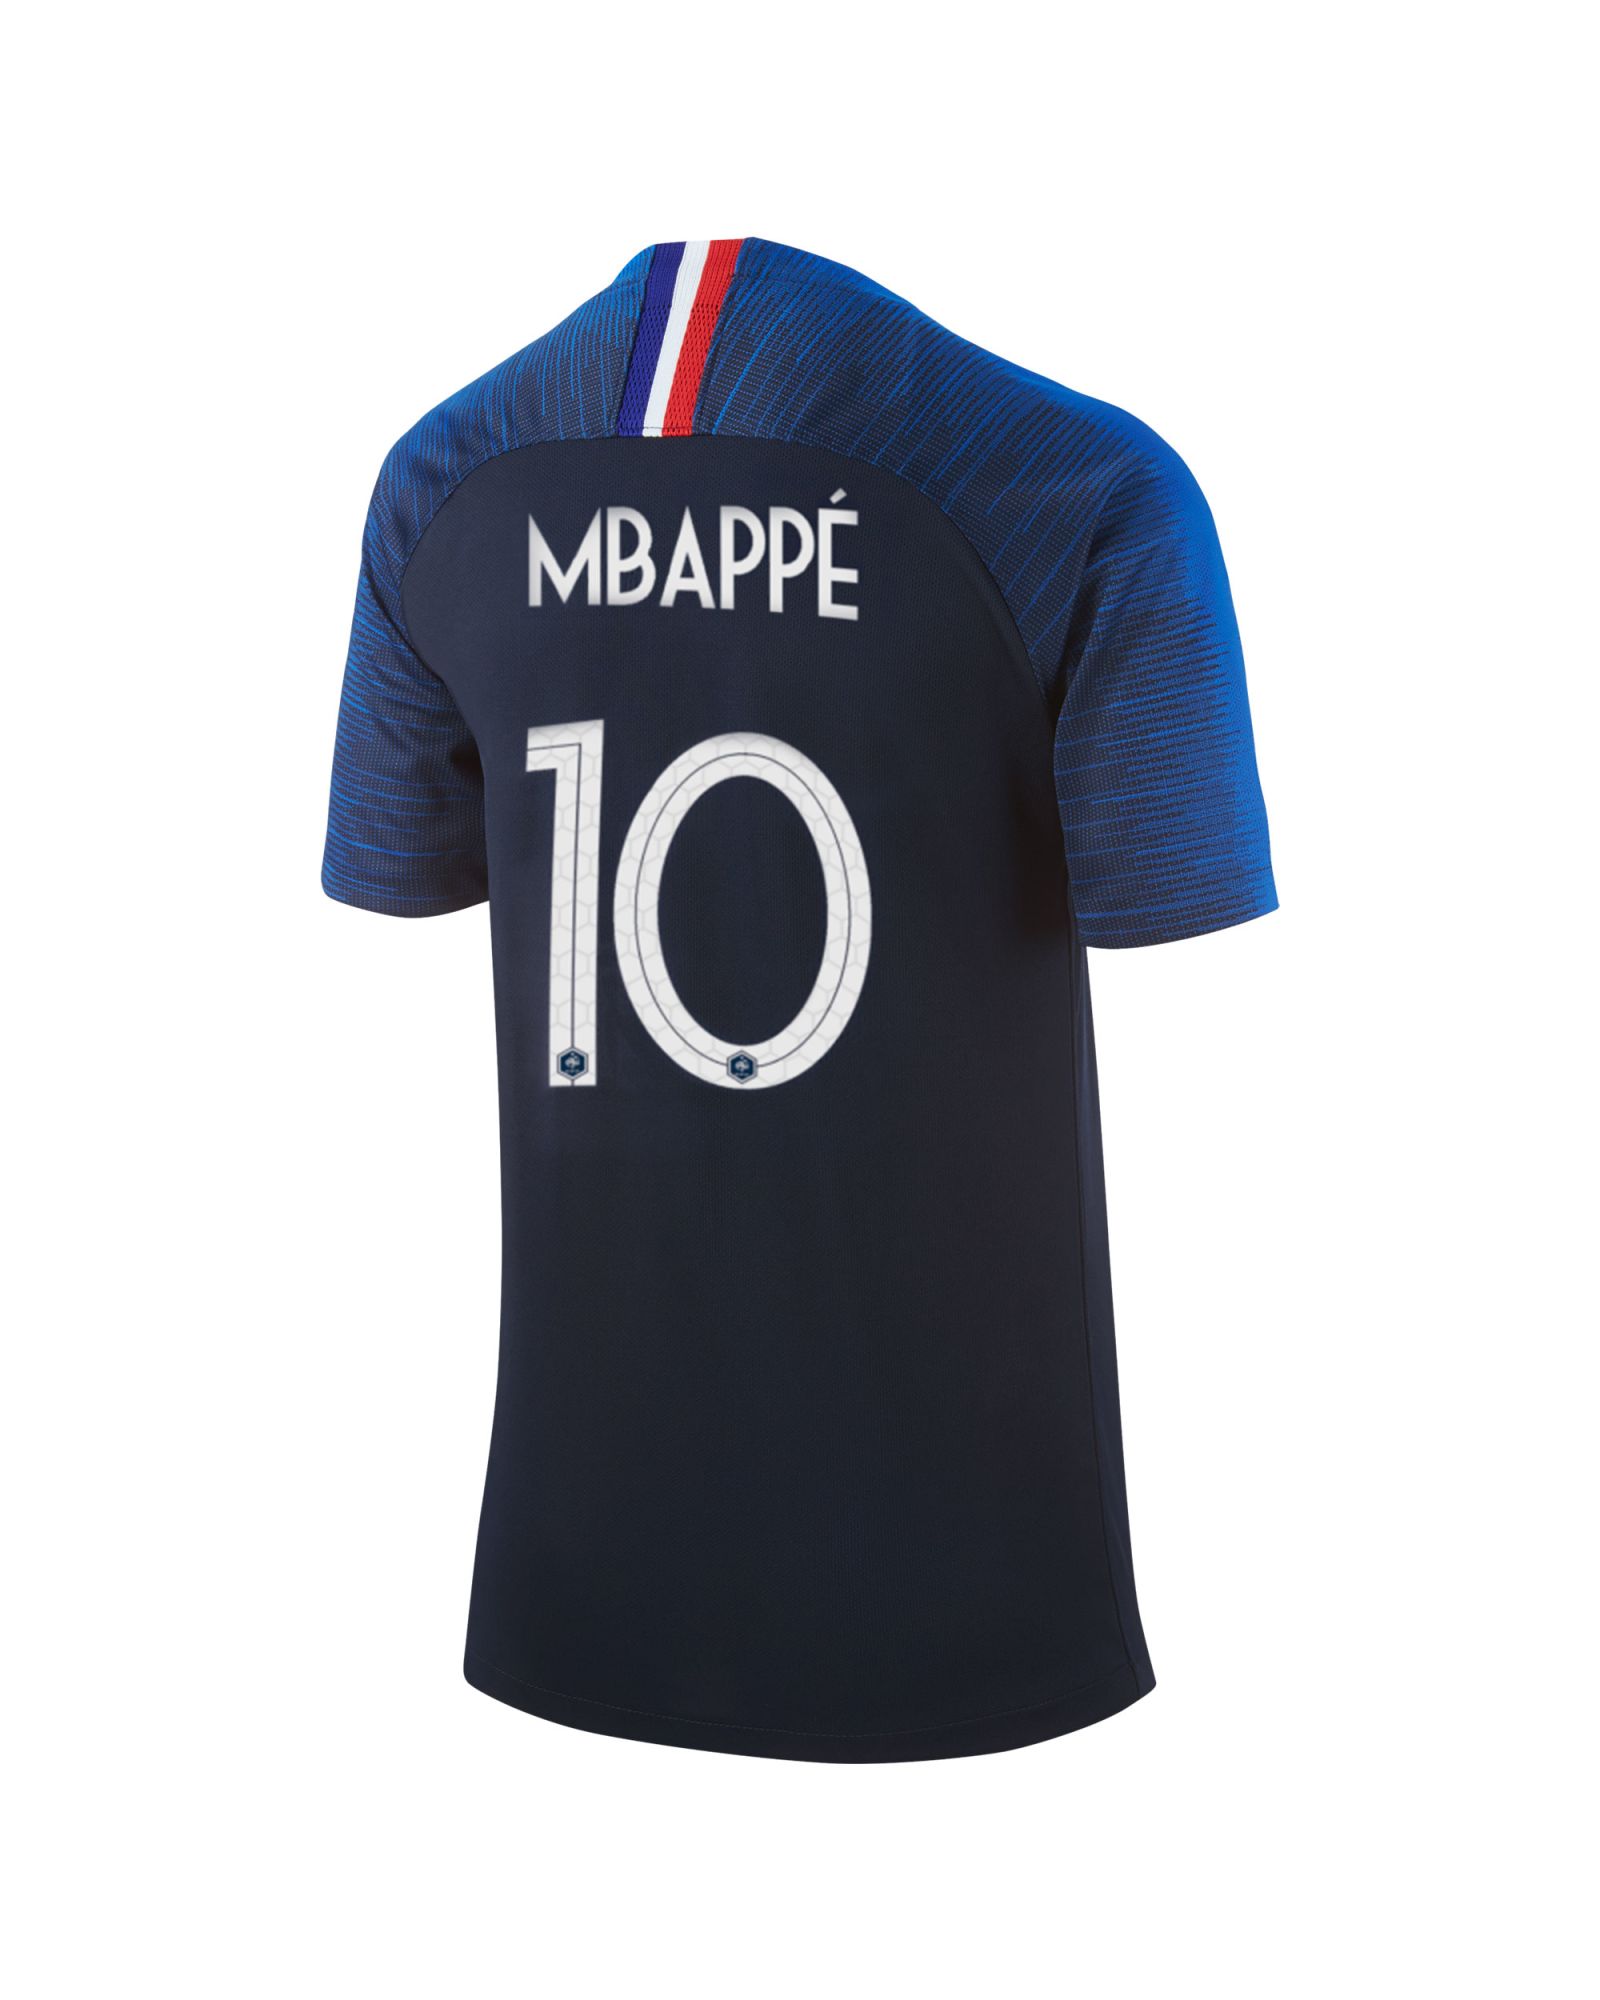 1ª Francia 2018 Mbappé Azul